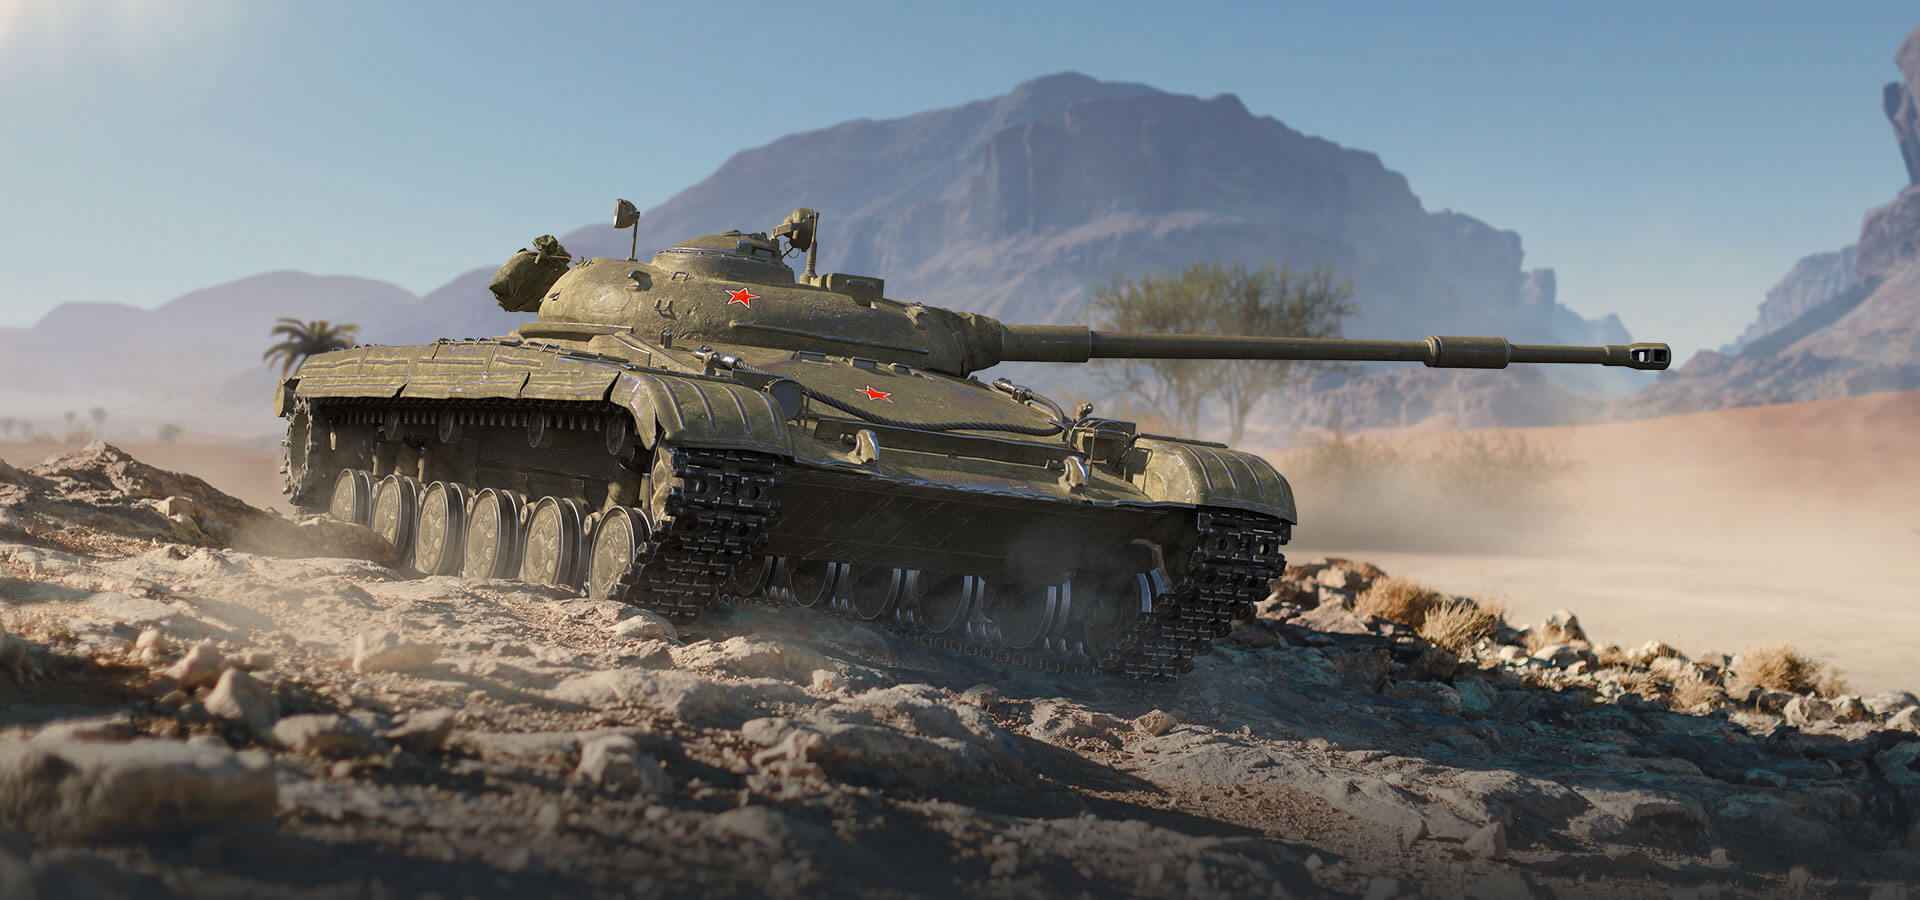 ИС-3 с МЗ, ЛТ-432 и СУ-130ПМ — в World of Tanks появились новые Премиум танки